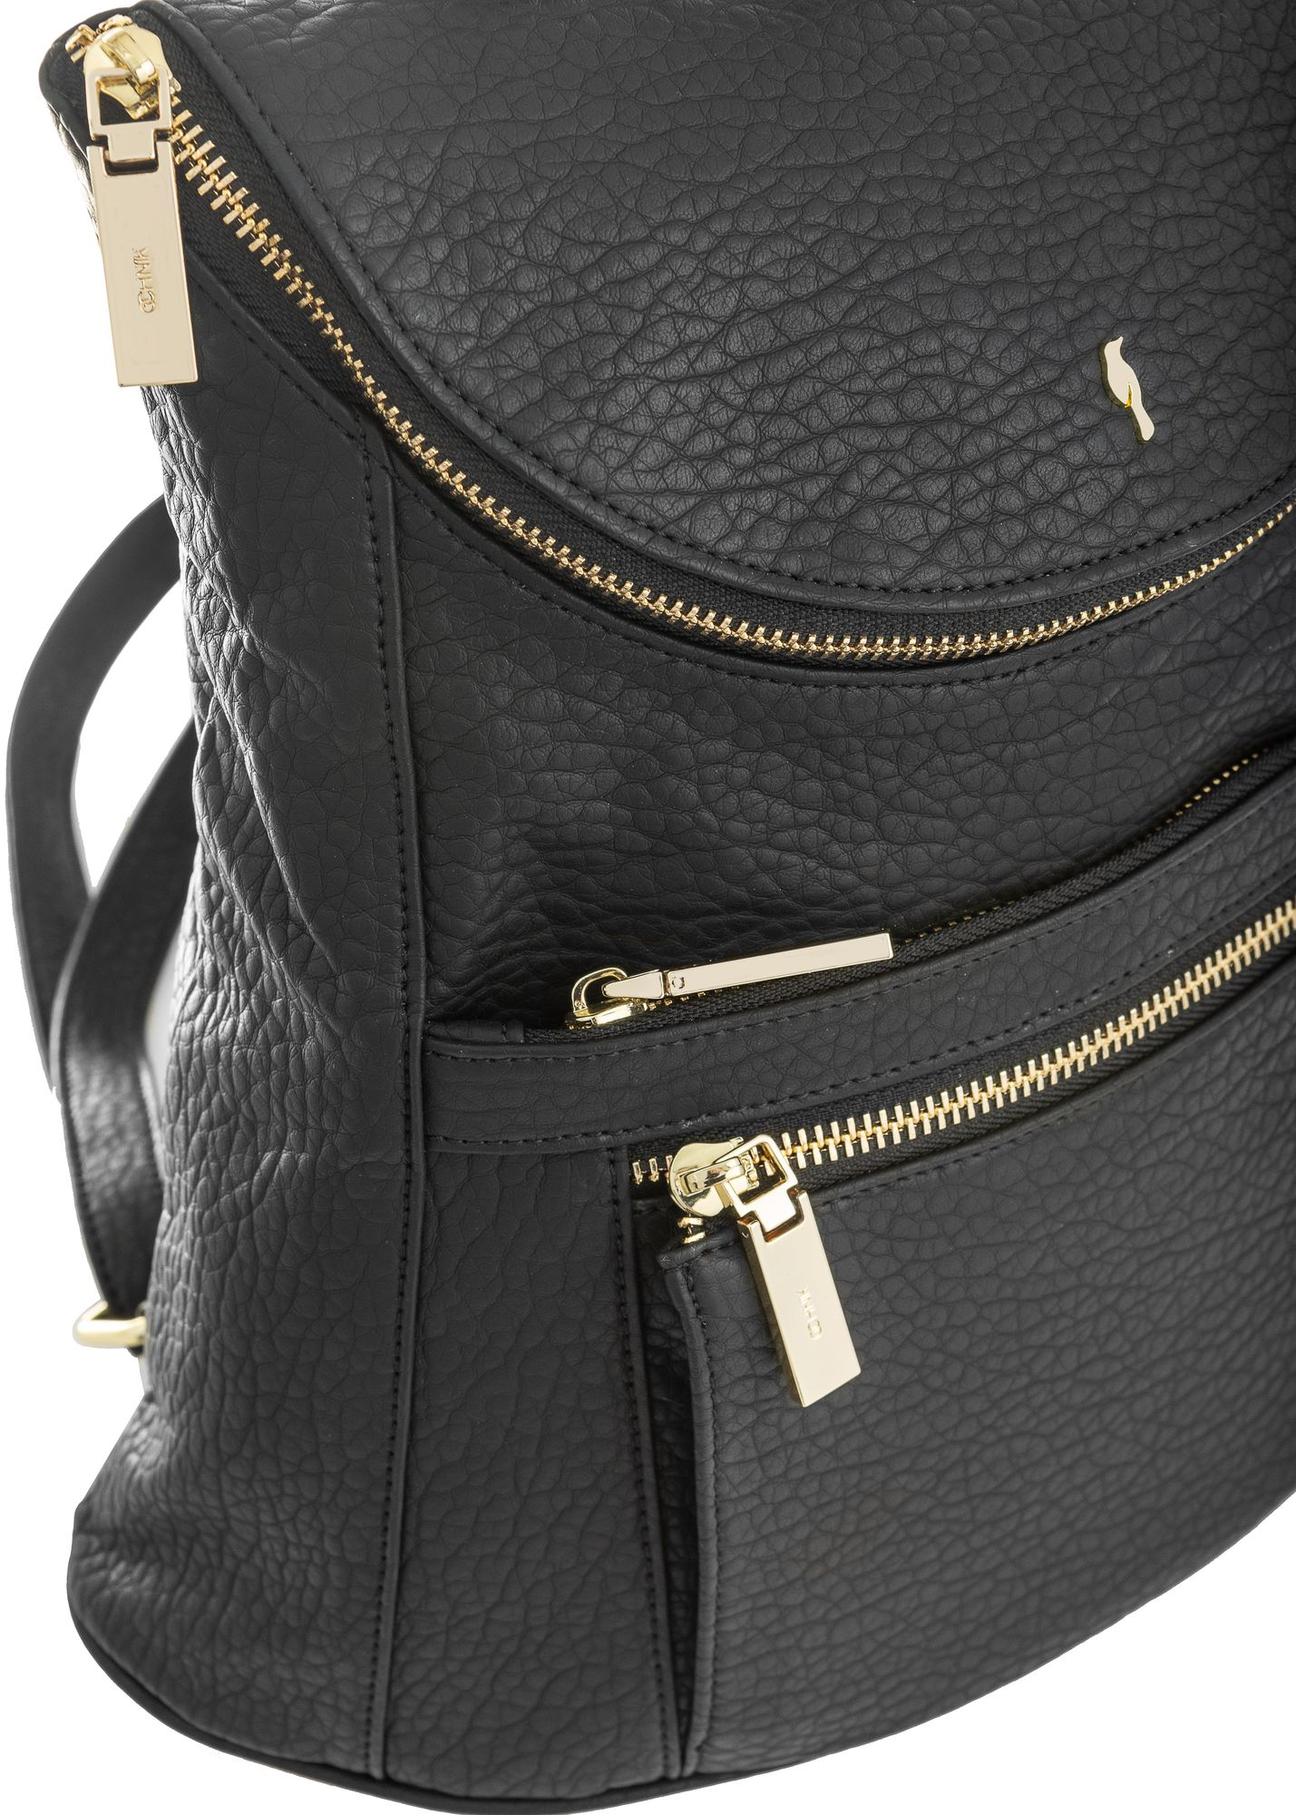 Czarny plecak damski z suwakami TOREC-0846-99(Z23)